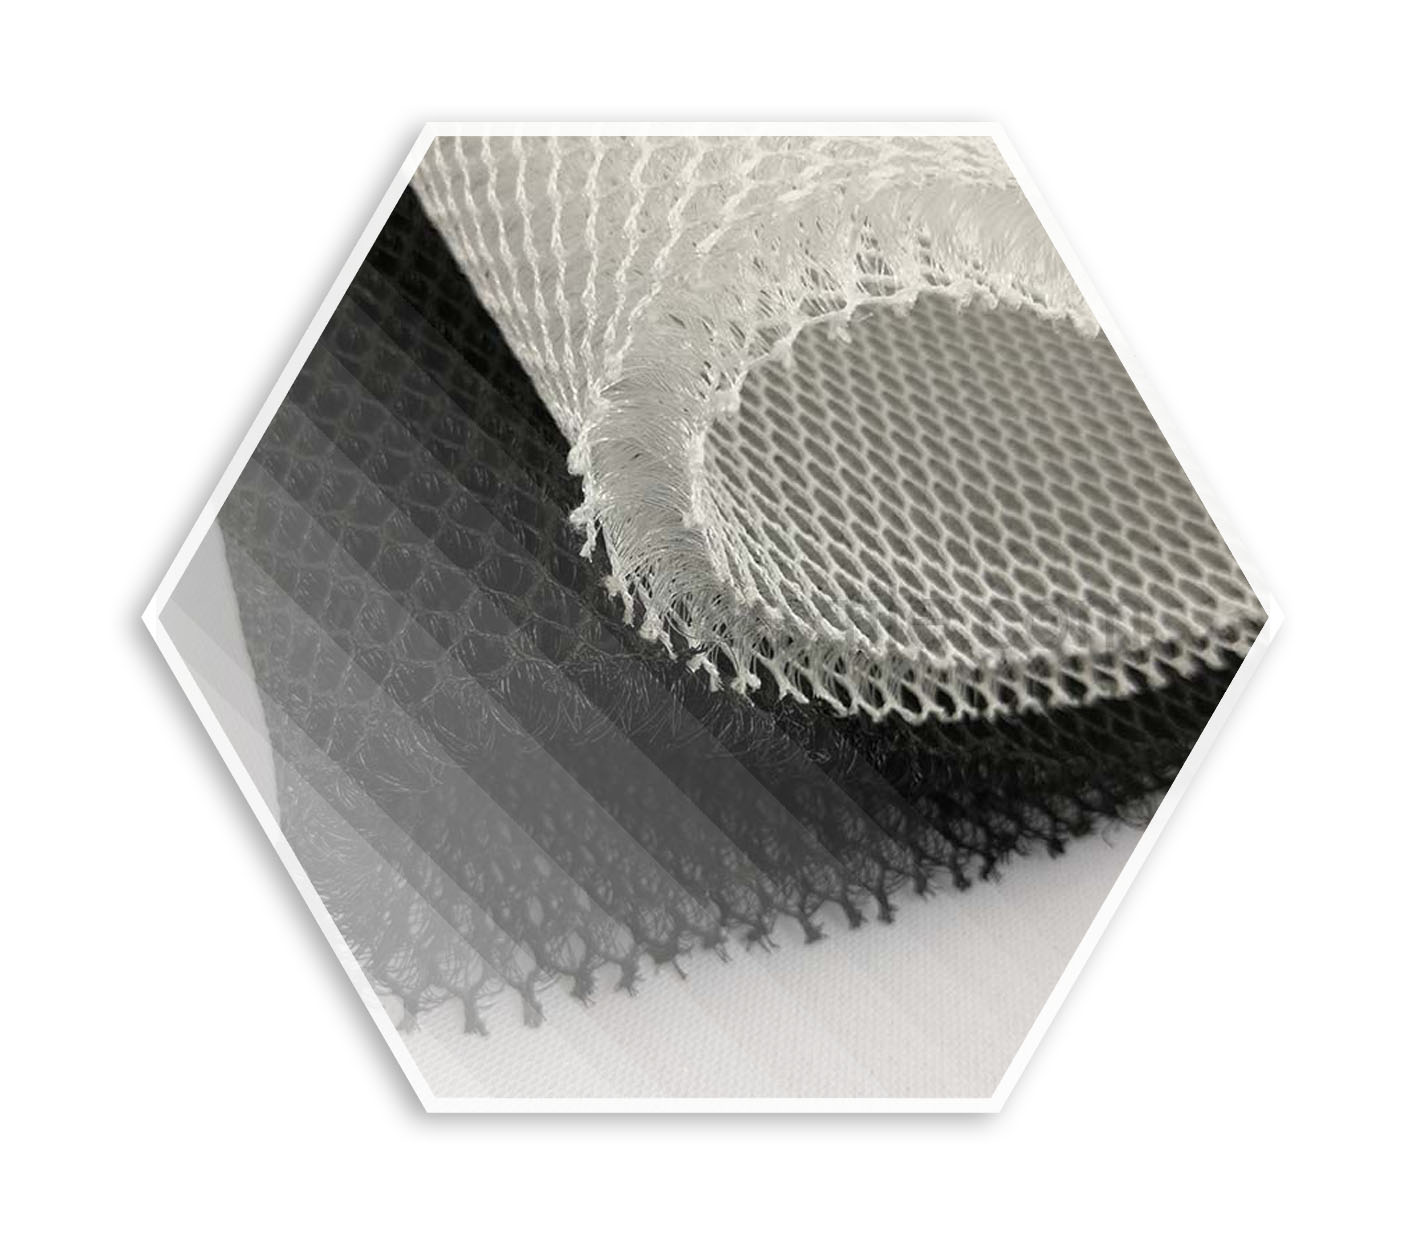 نیترات نقره و تولید پارچه های سه بعدی - نرمال لابو